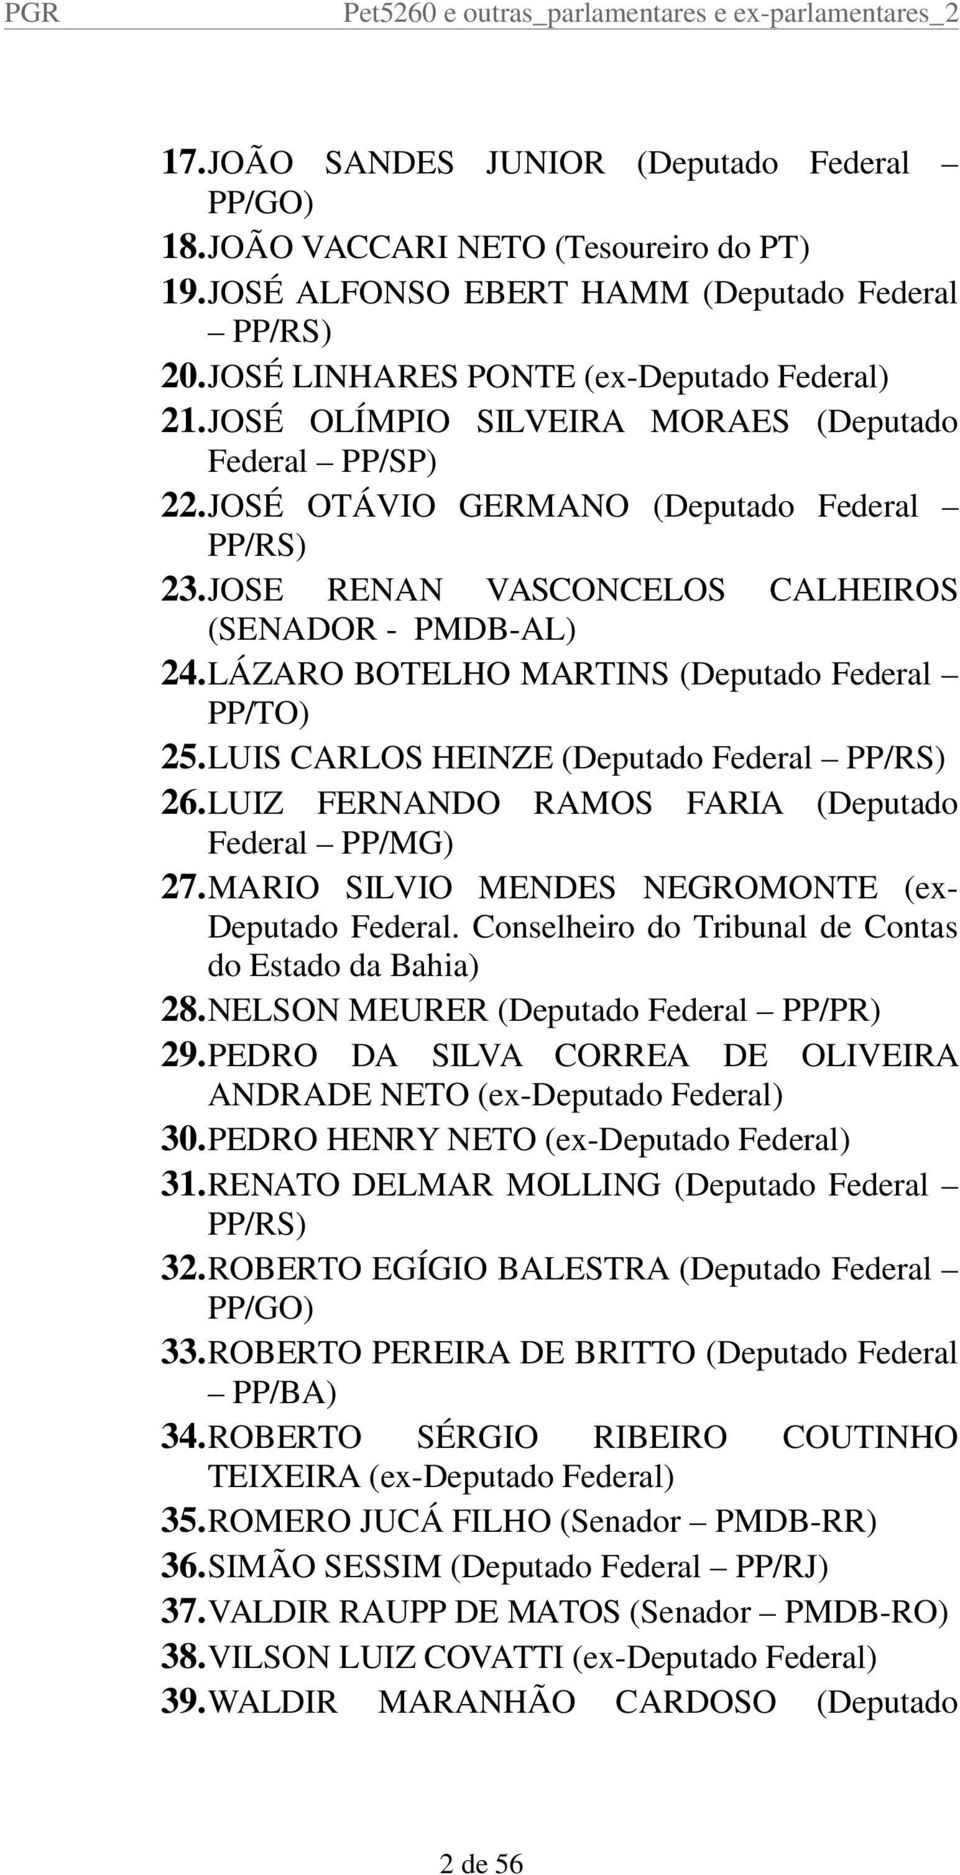 LÁZARO BOTELHO MARTINS (Deputado Federal PP/TO) 25.LUIS CARLOS HEINZE (Deputado Federal PP/RS) 26.LUIZ FERNANDO RAMOS FARIA (Deputado Federal PP/MG) 27.